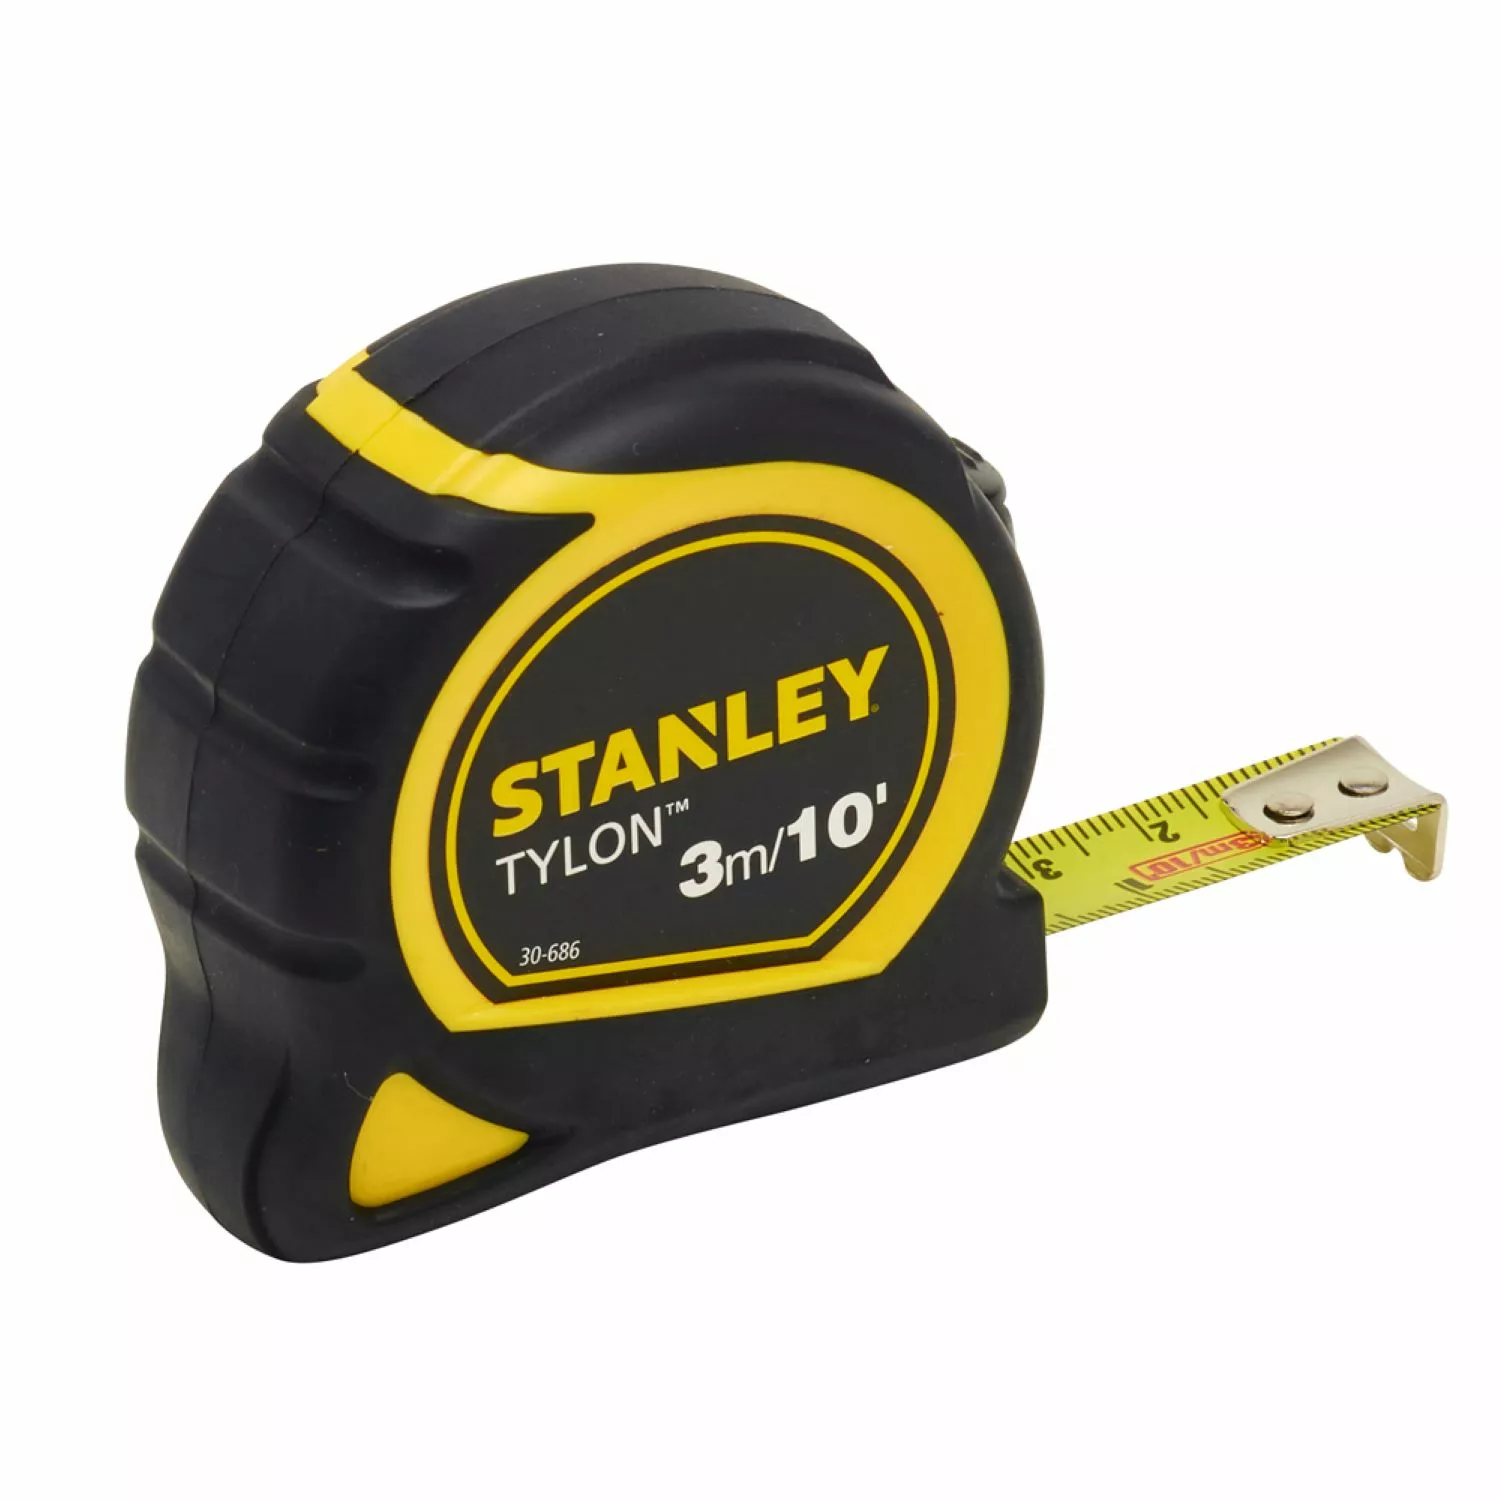 Stanley 0-30-686 - Mètre Ruban Stanley Tylon 3m/10' - 12,7mm-image